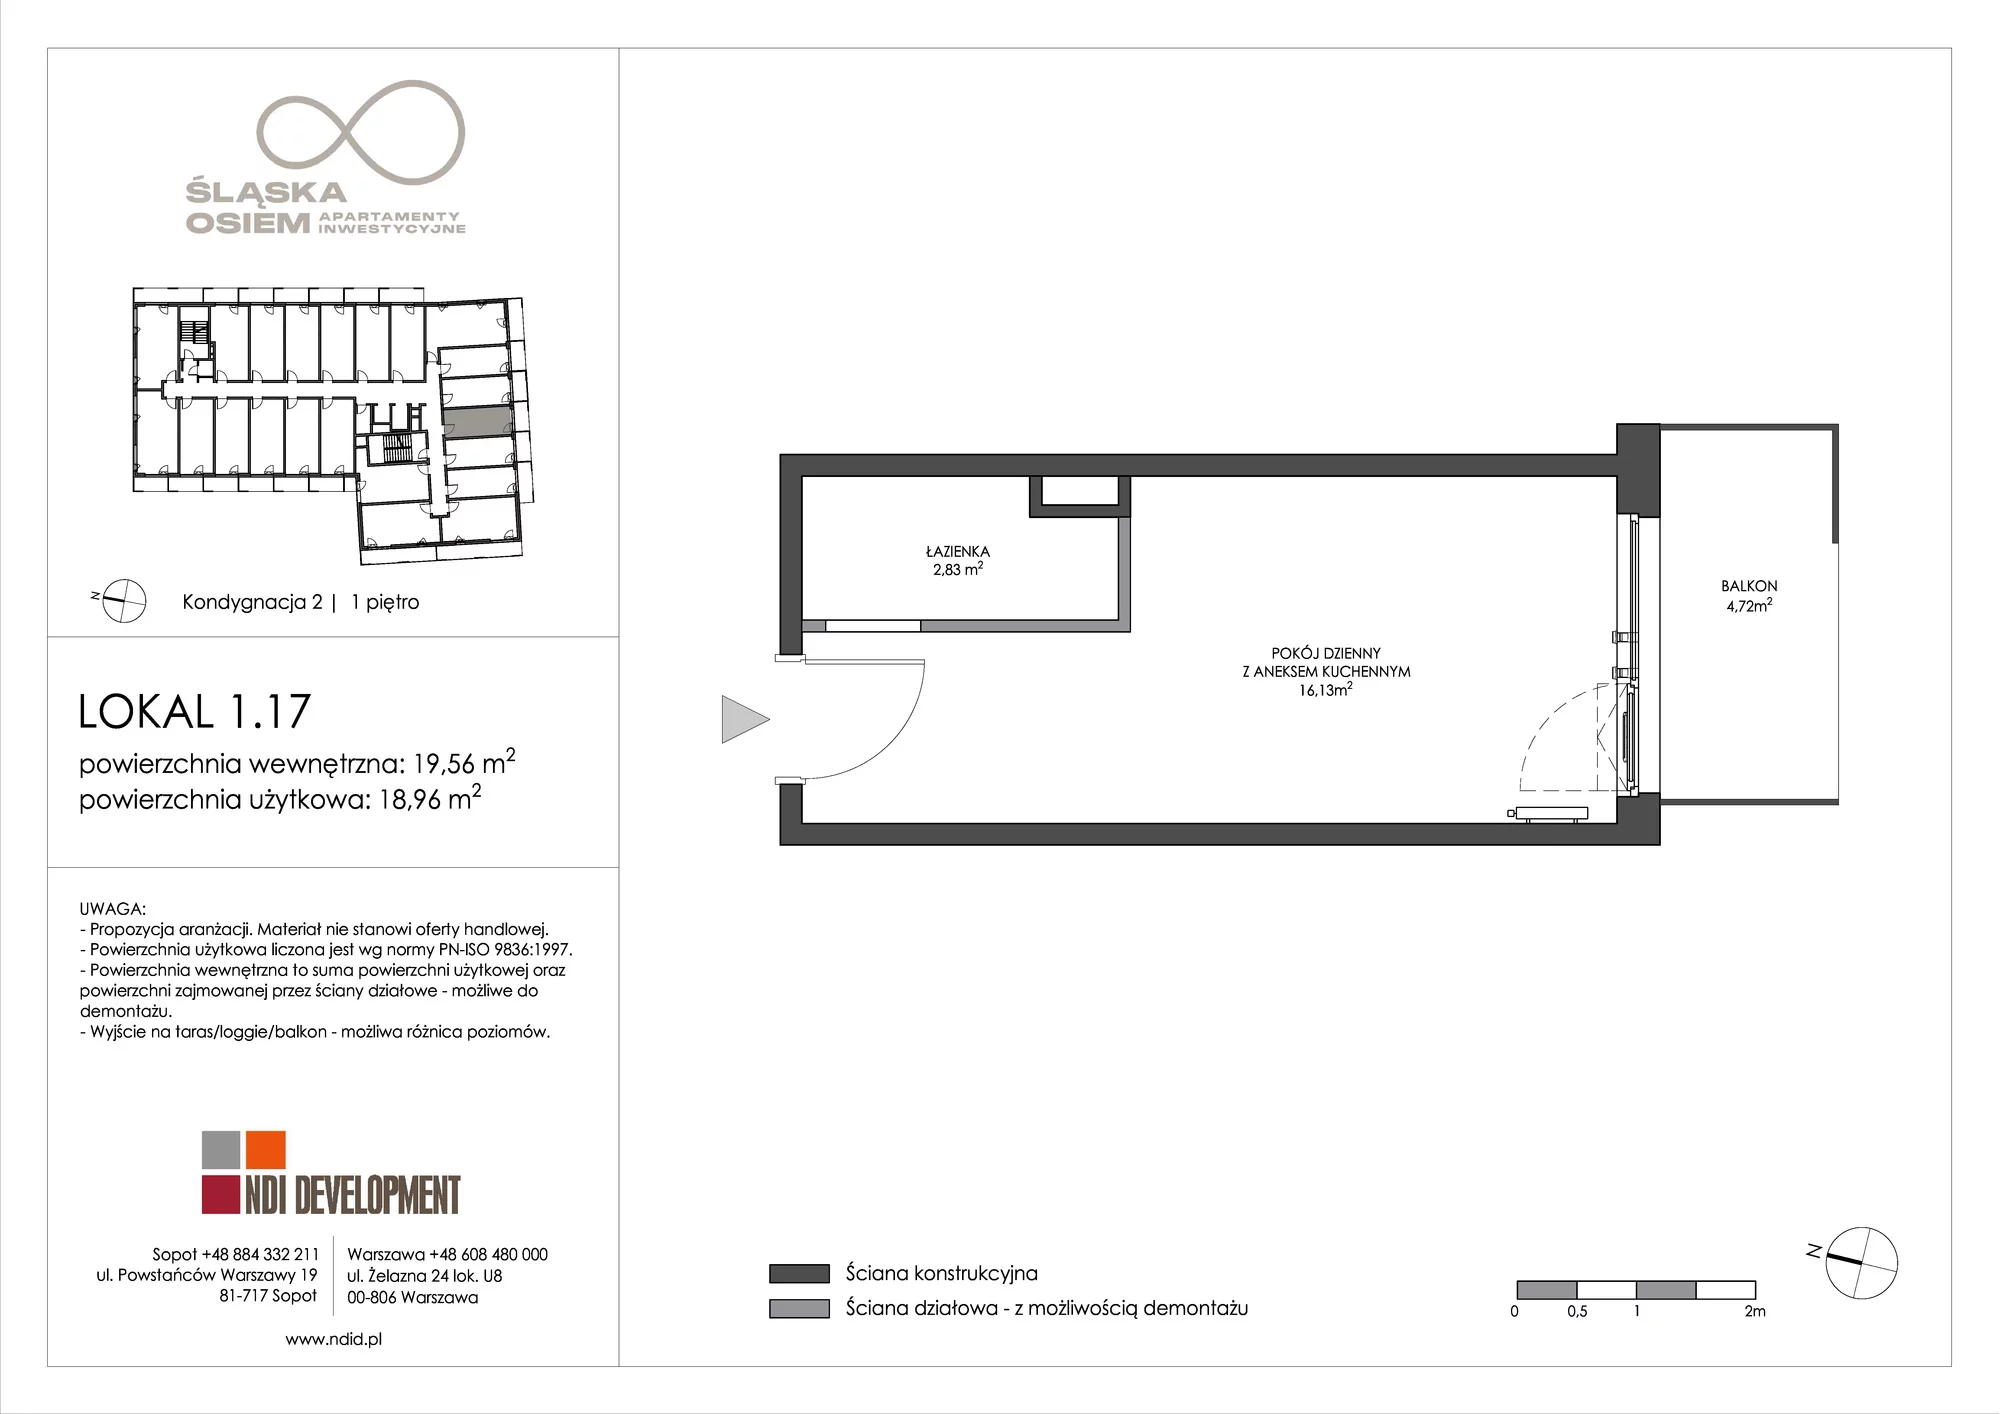 Apartament inwestycyjny 19,56 m², piętro 1, oferta nr 1.17, Śląska Osiem, Gdańsk, Przymorze, ul. Śląska 8